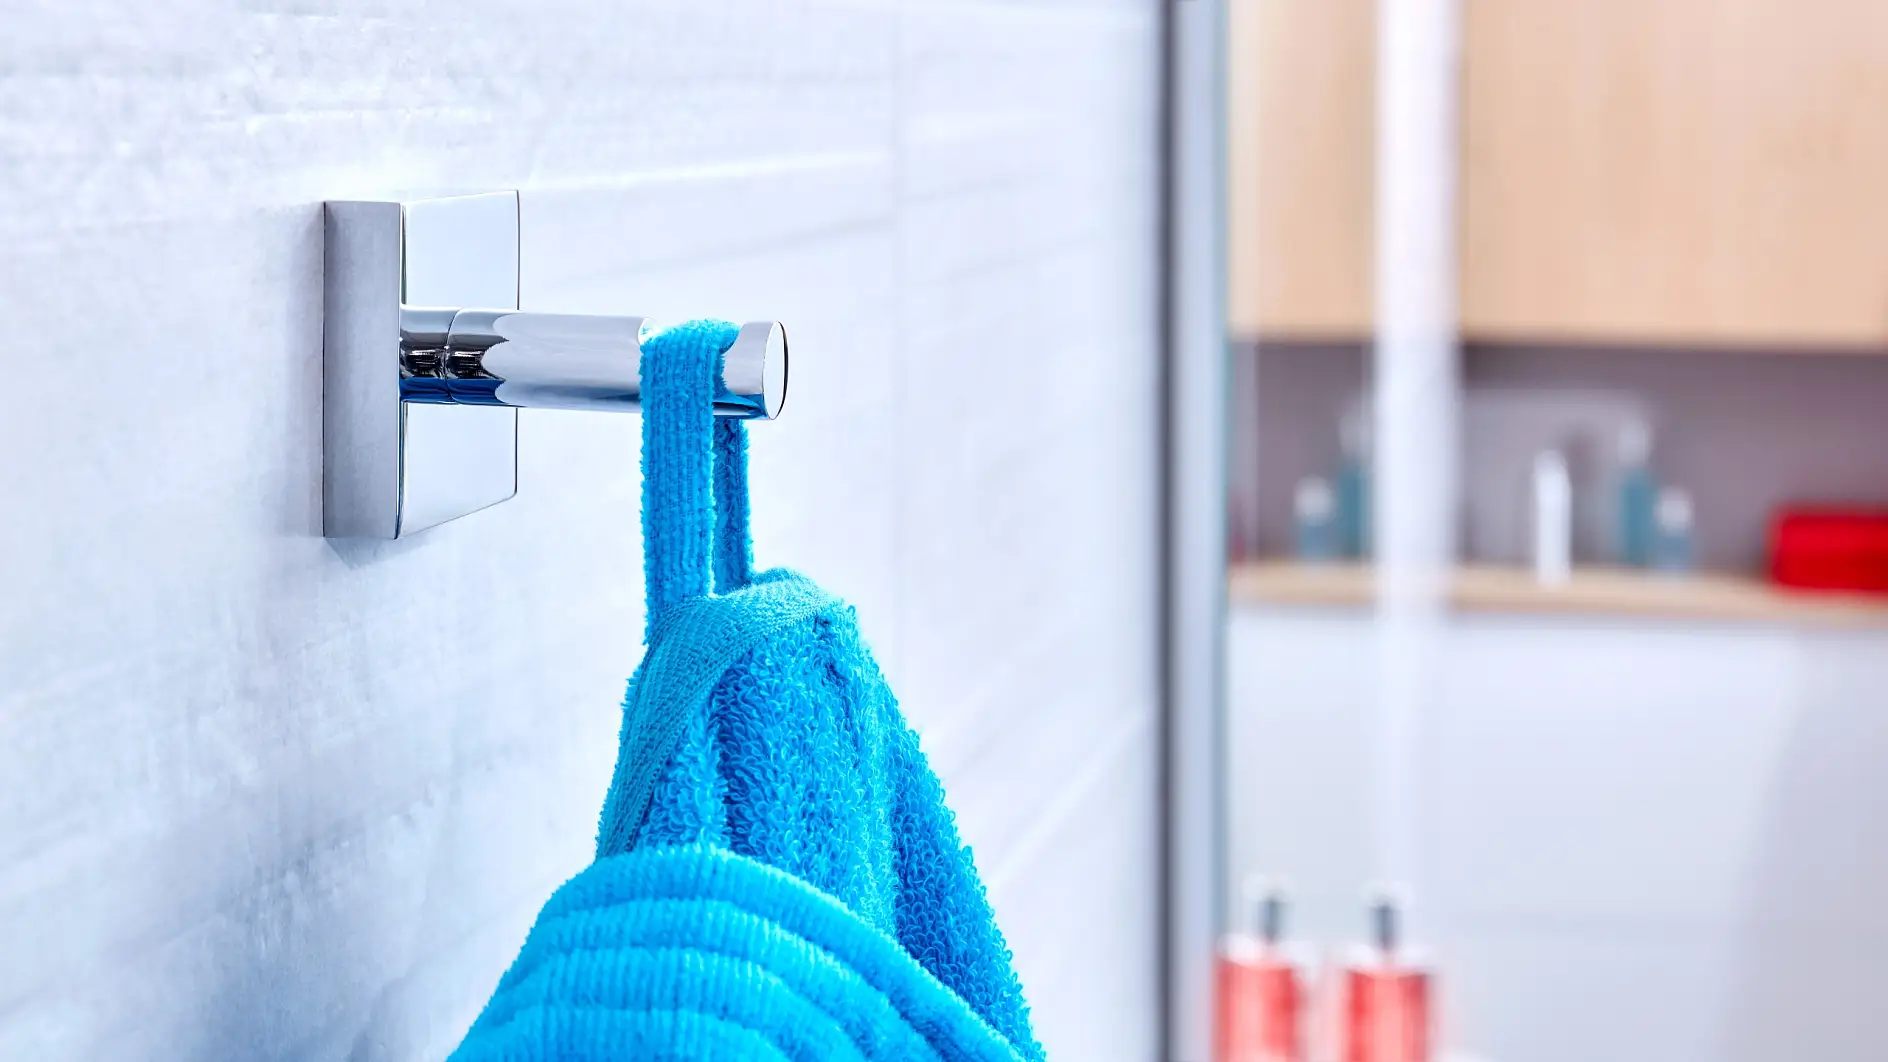 Fordi håndklær og badekåper trenger et sted å henge og holde seg tørre før bruk.